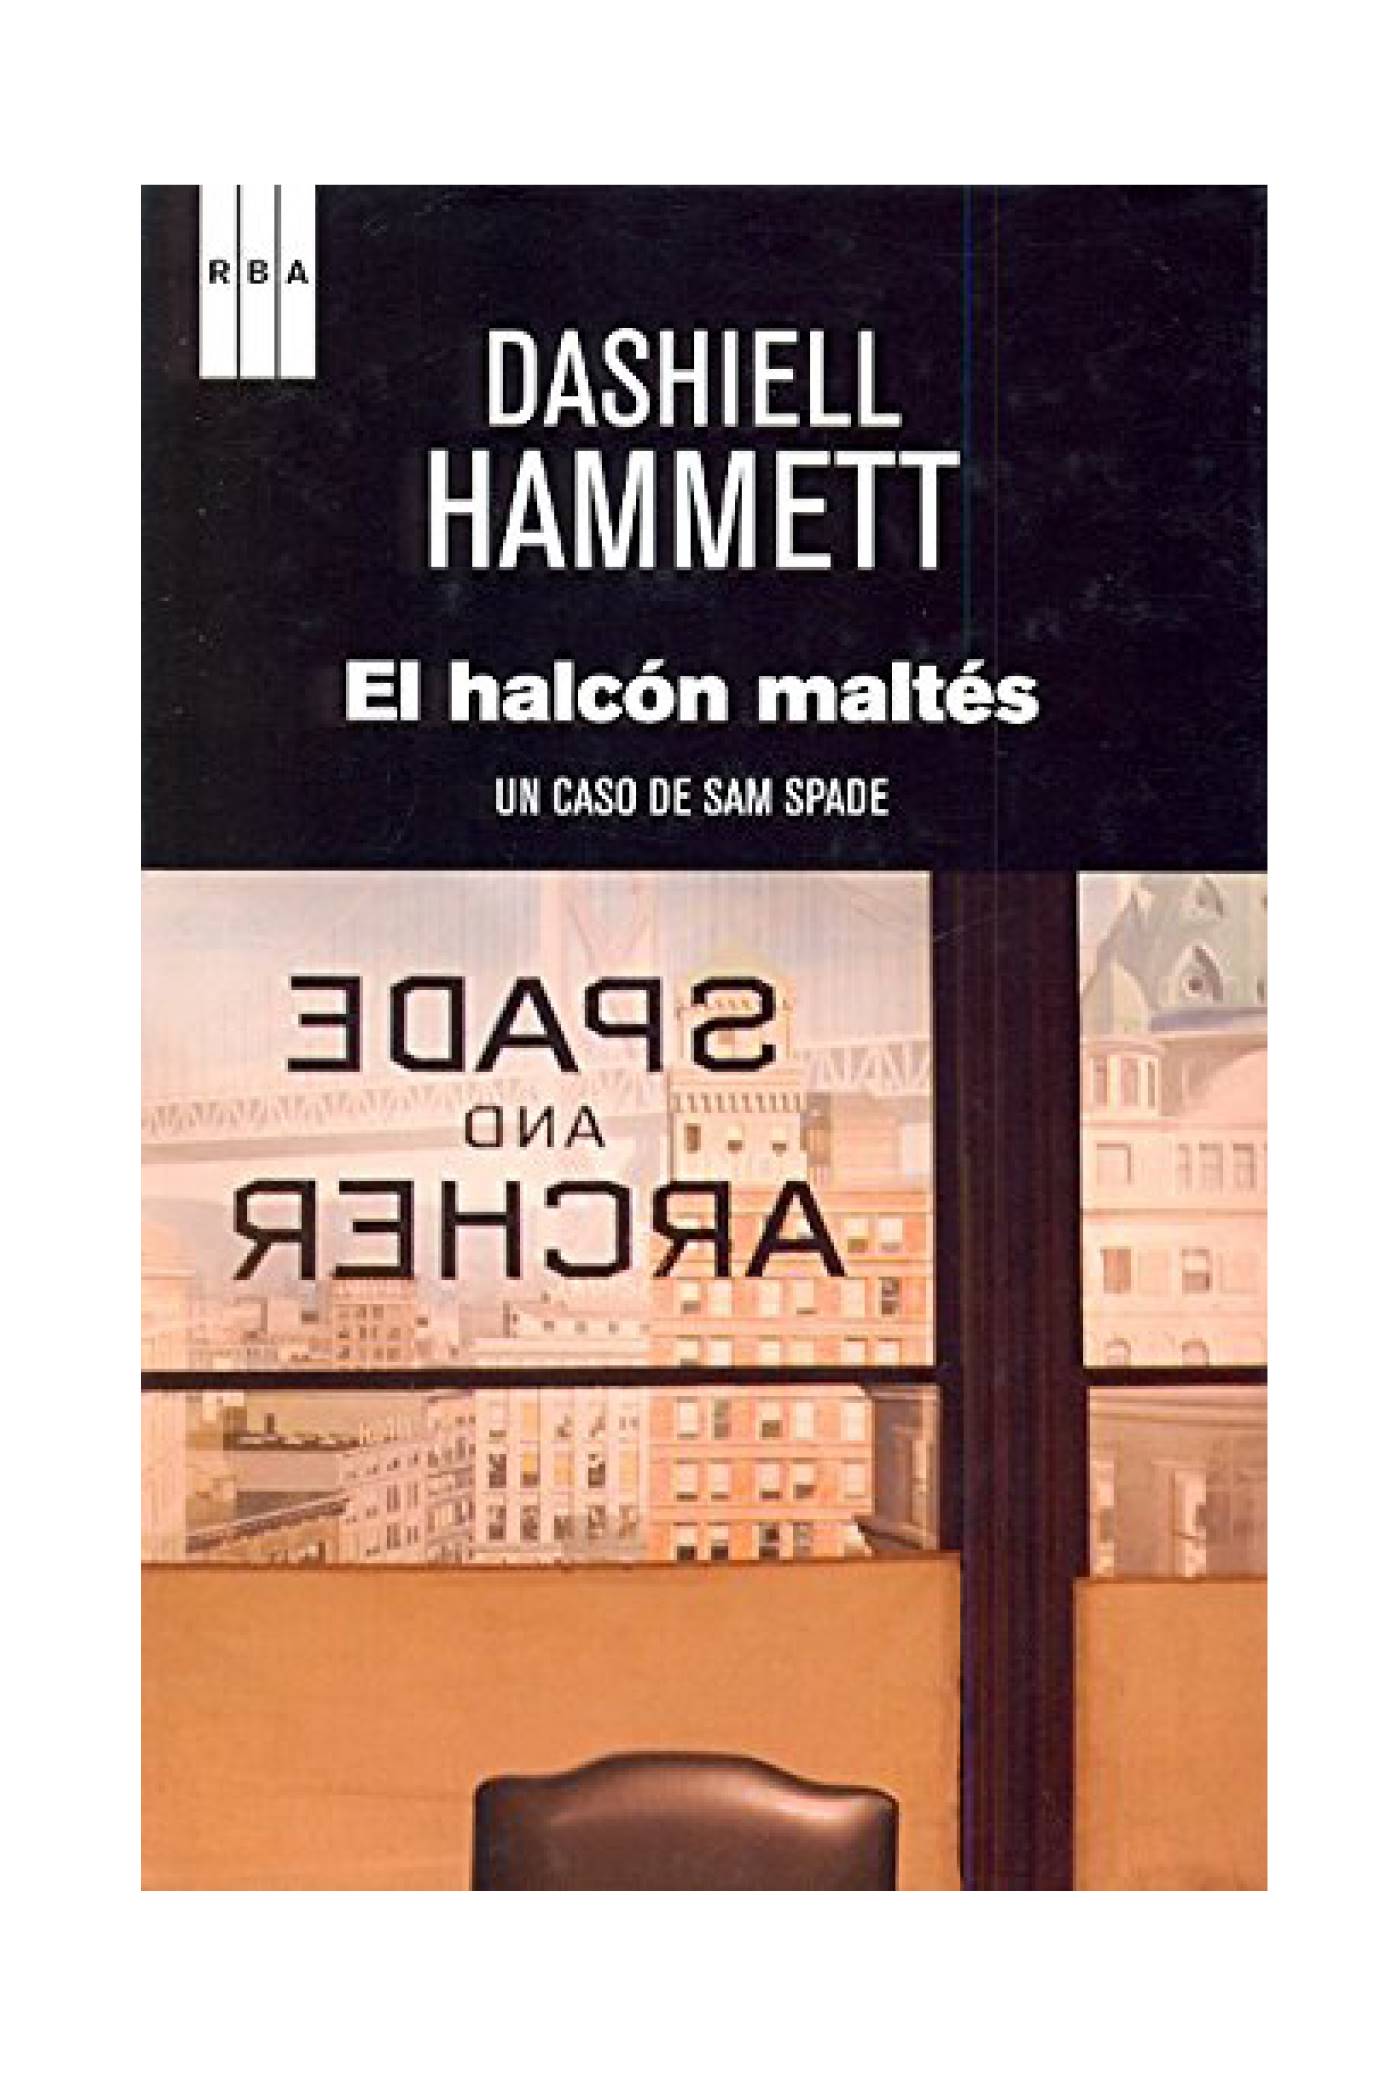 novela negra el halcón maltés dashiell hammet